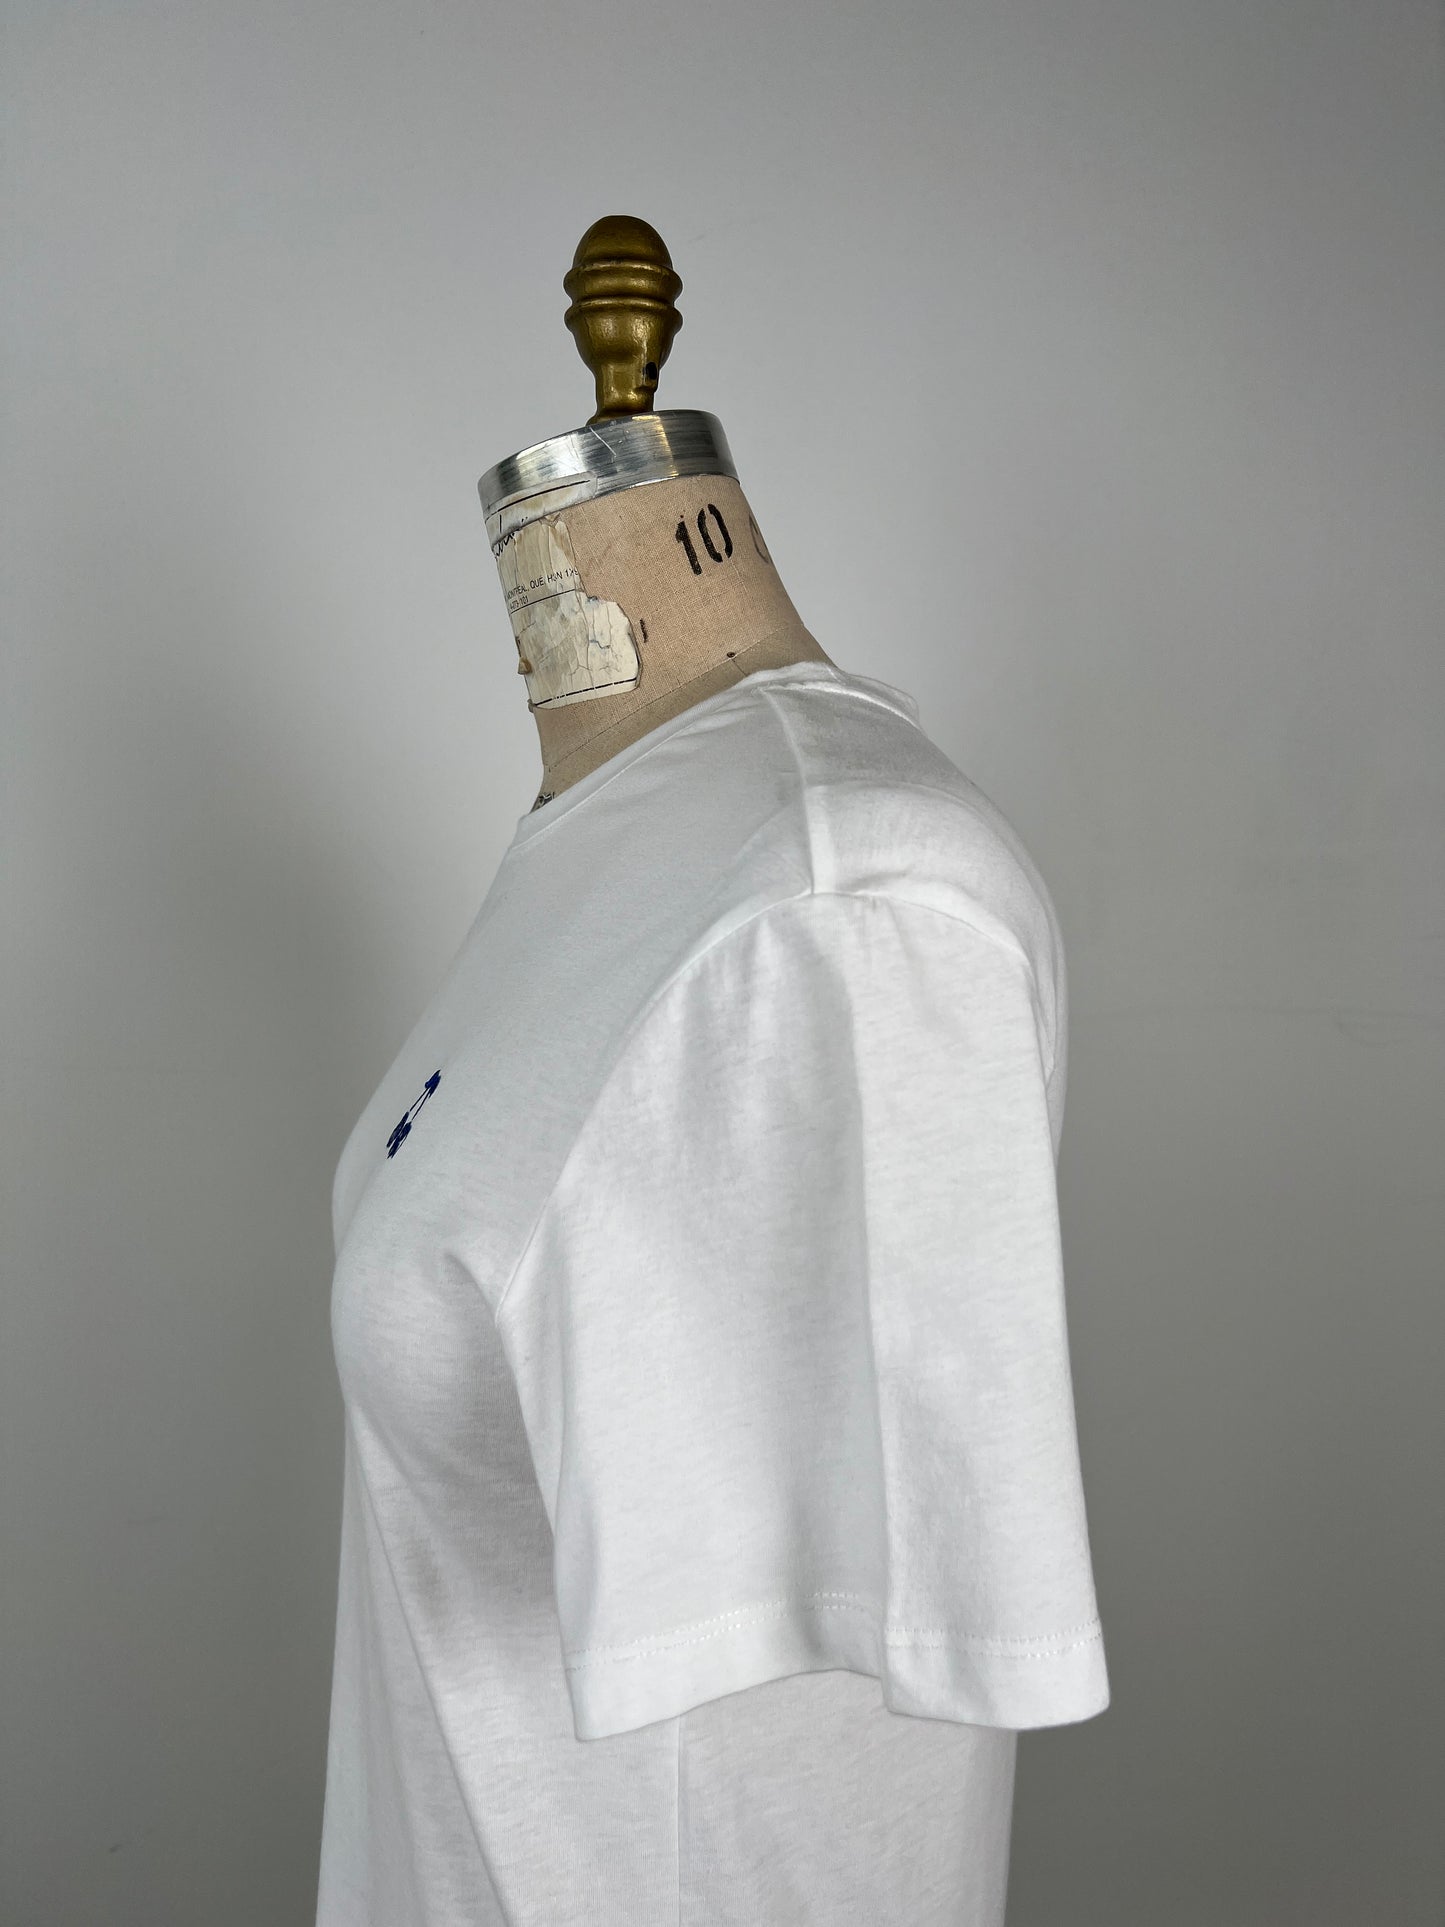 T-shirt blanc à broderie cerises bleues "POP ART" (S)